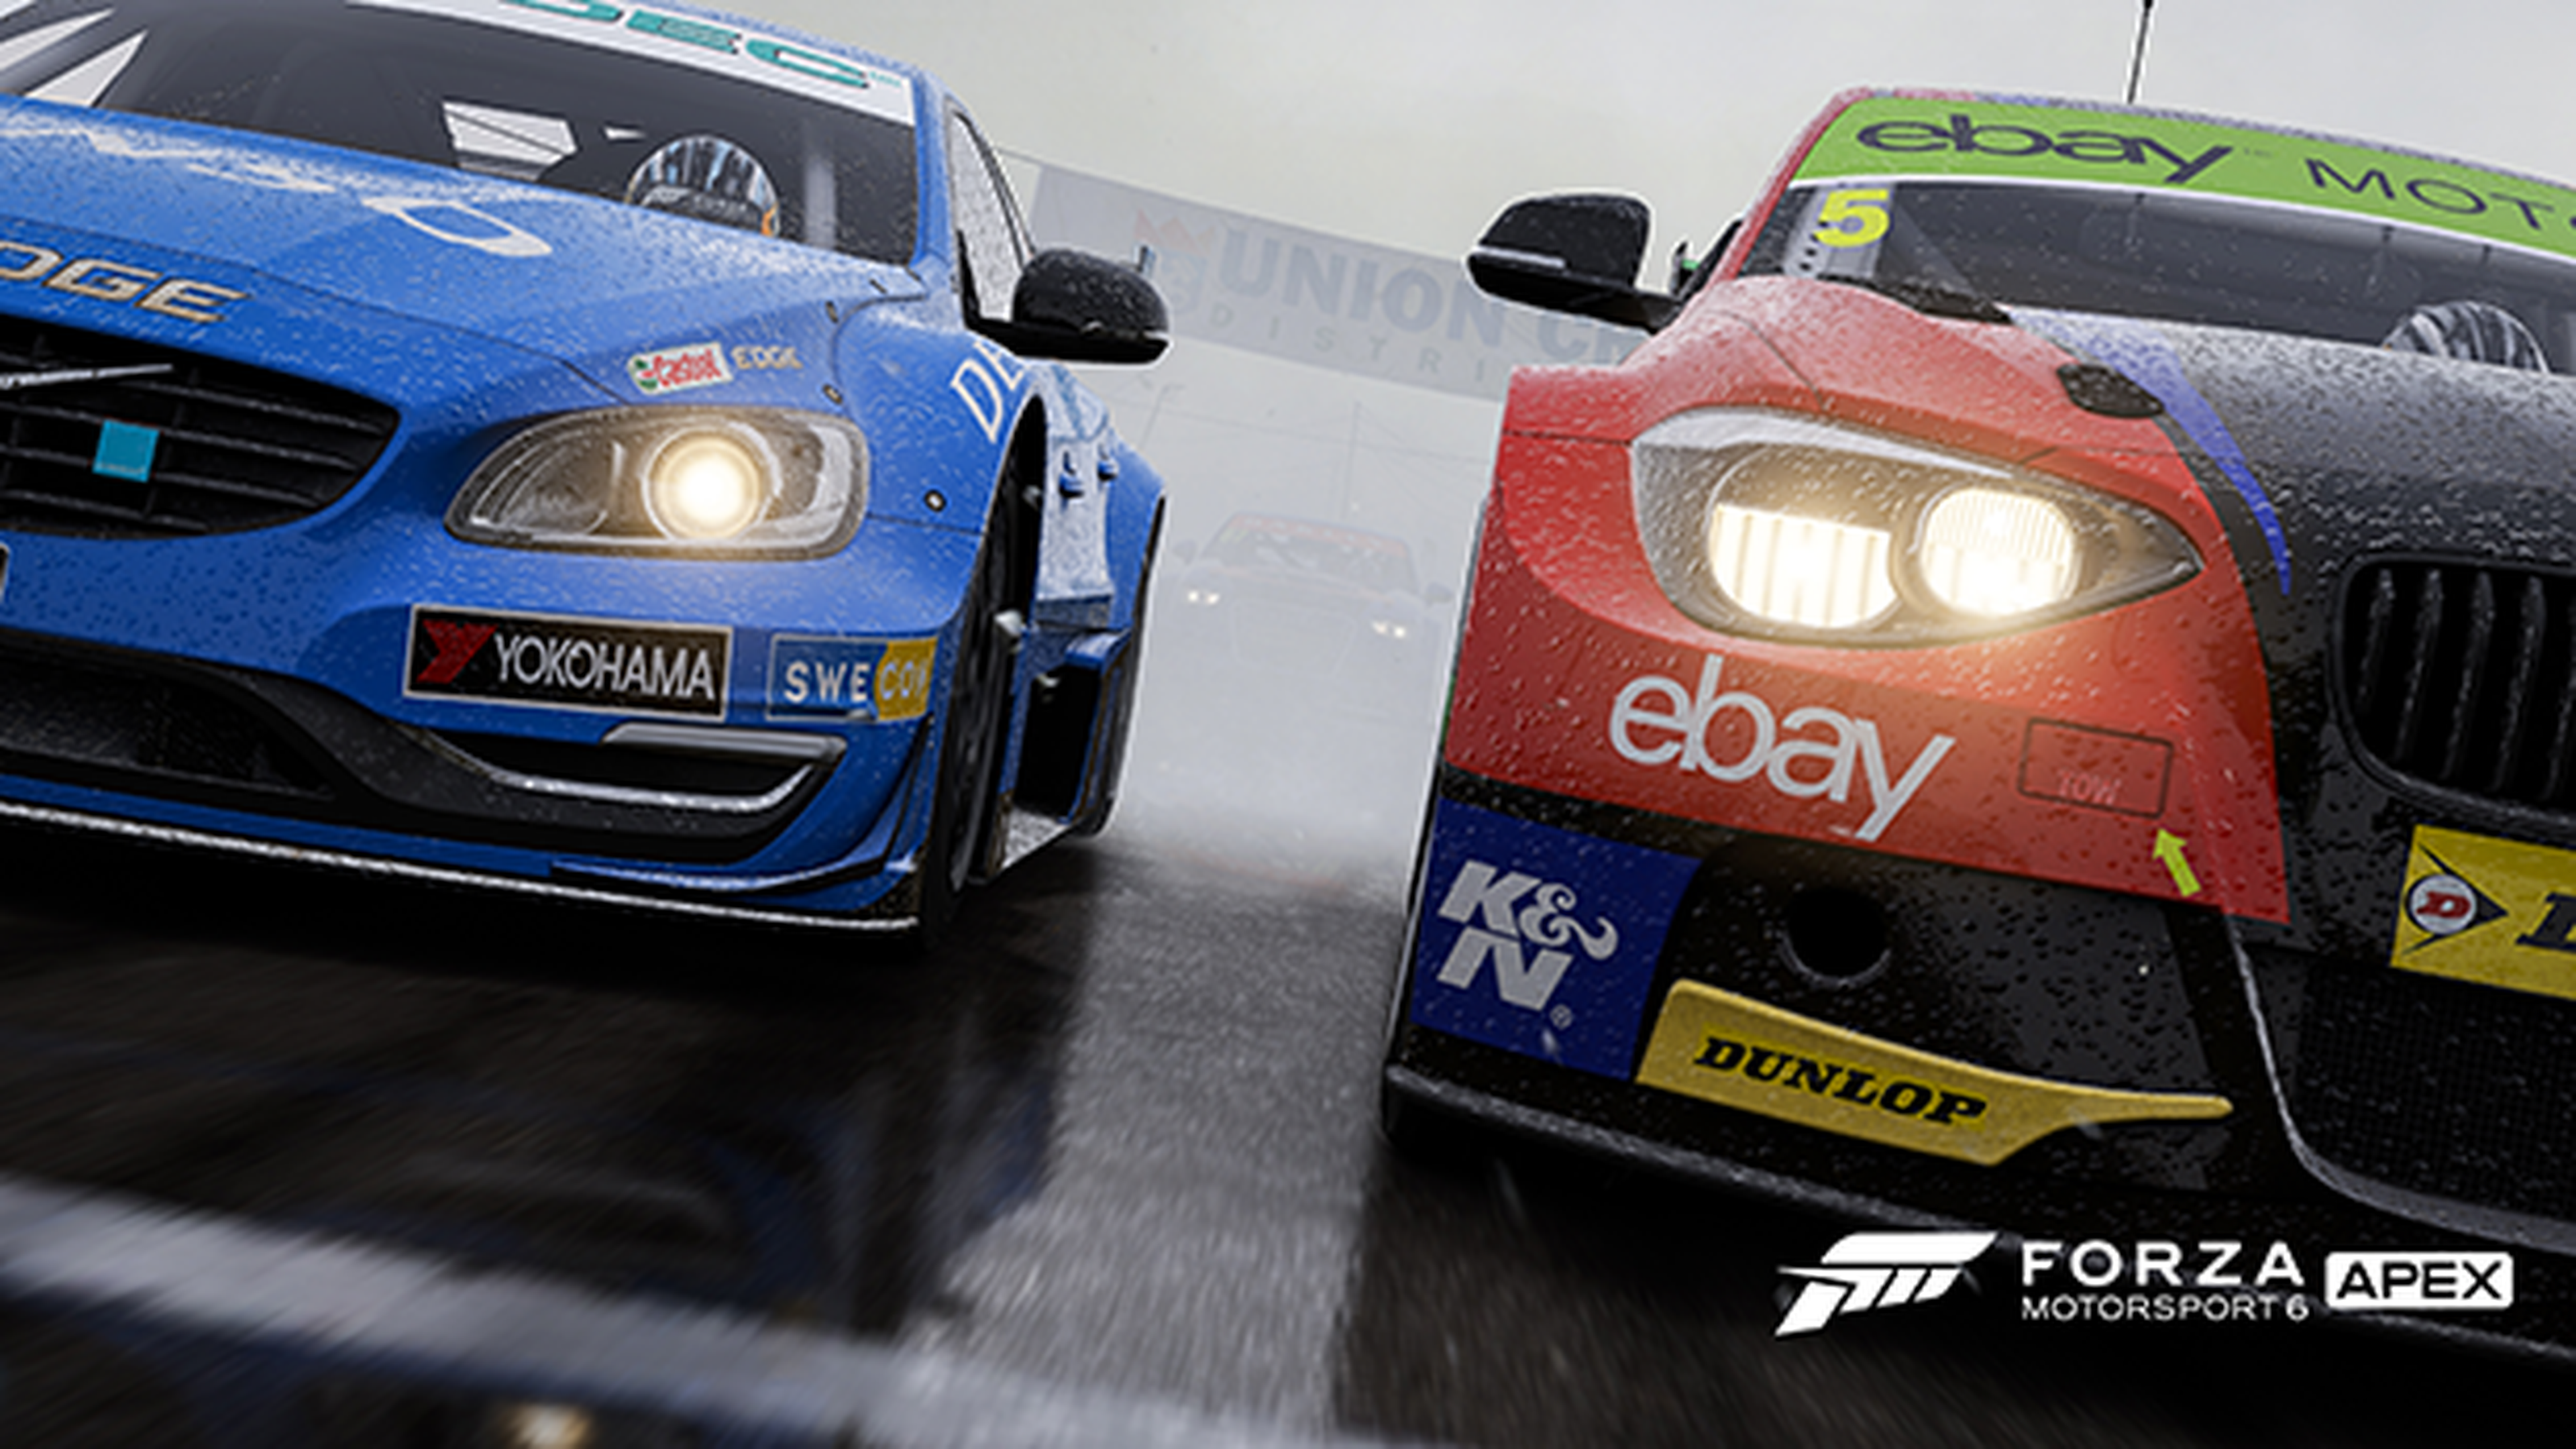 Ya está disponible la beta de Forza Motorsport 6: Apex